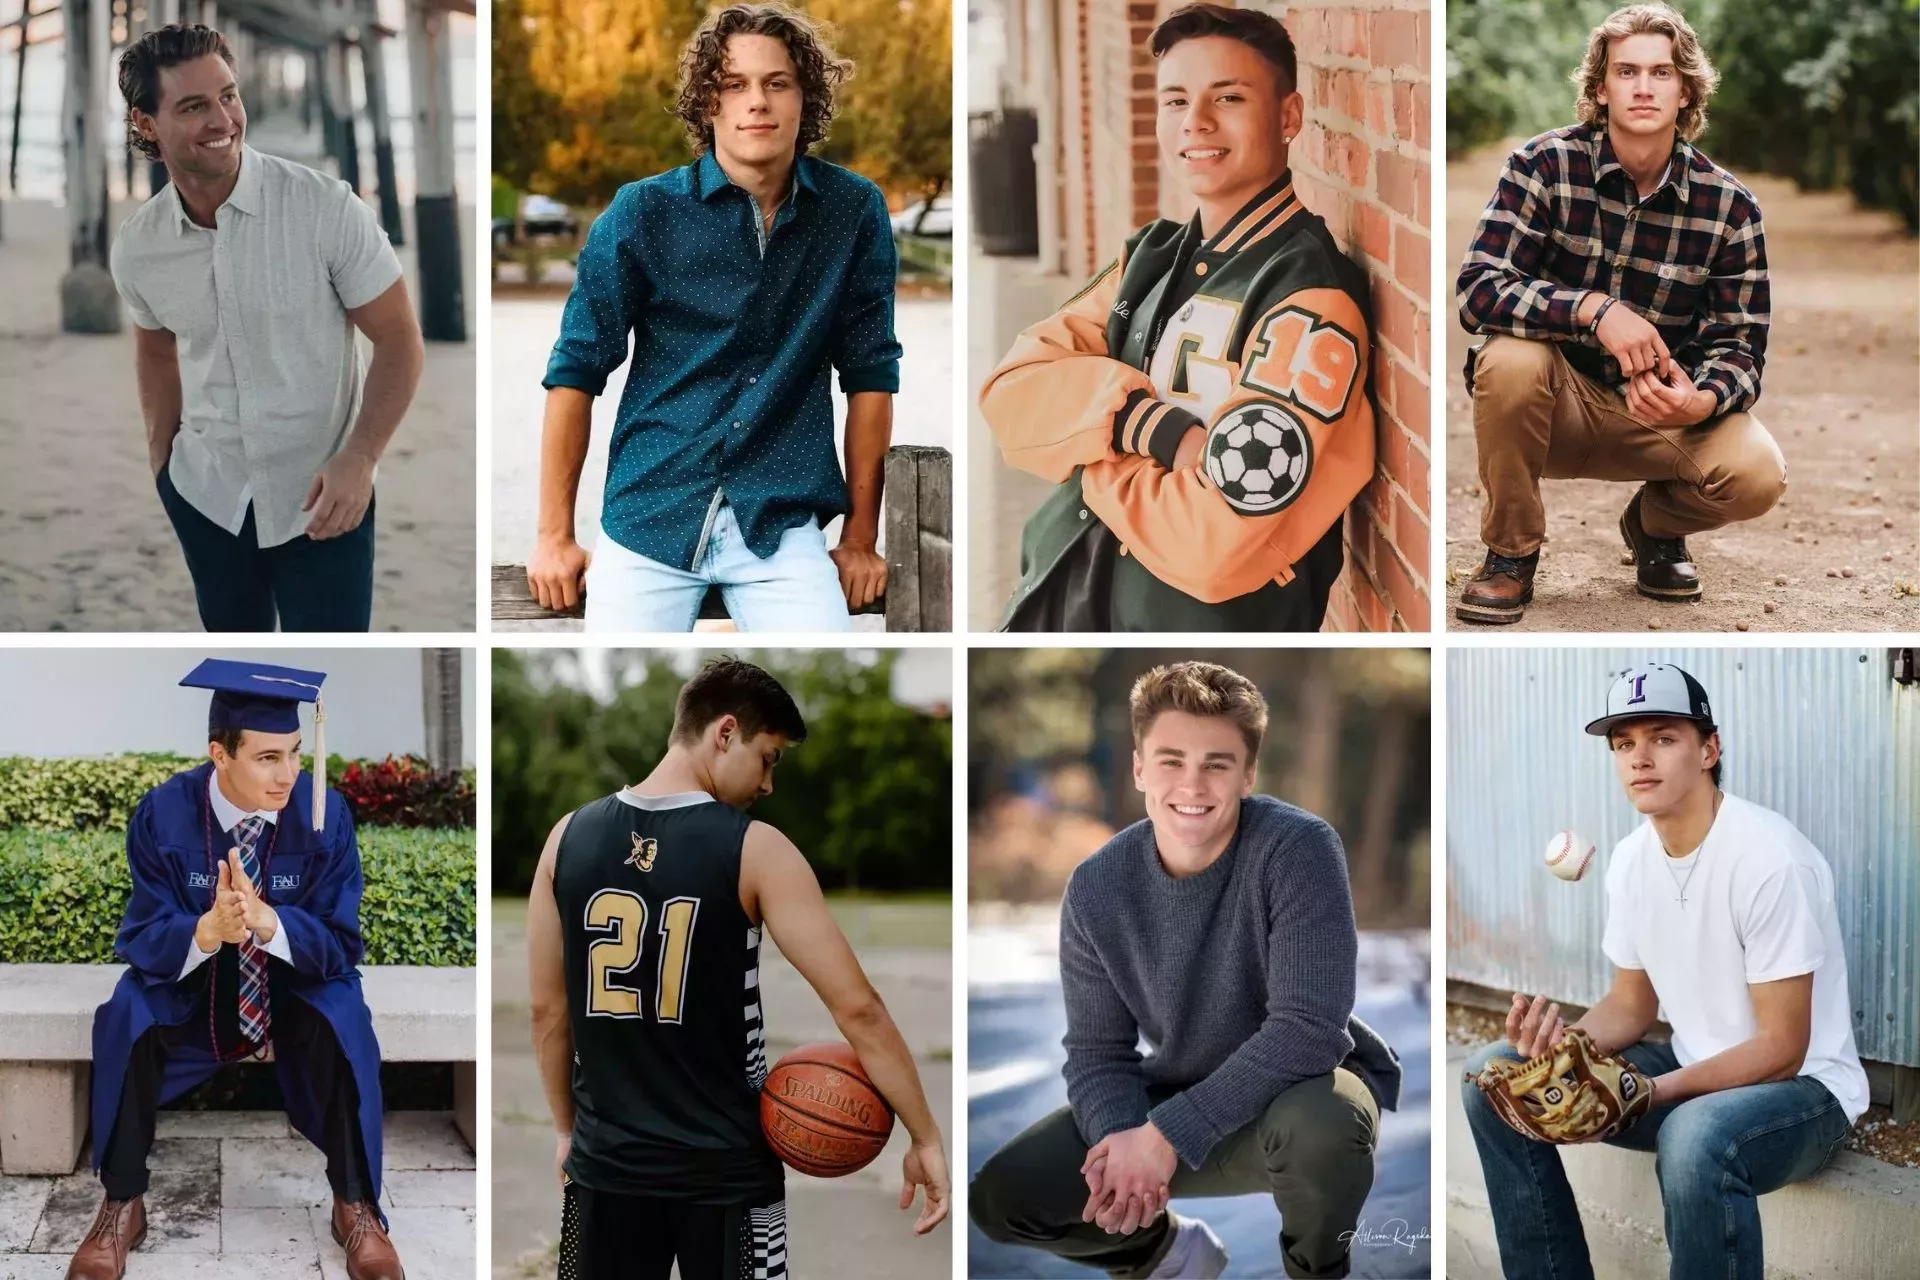 25 ideas únicas y creativas para fotos de chicos en su último año de carrera